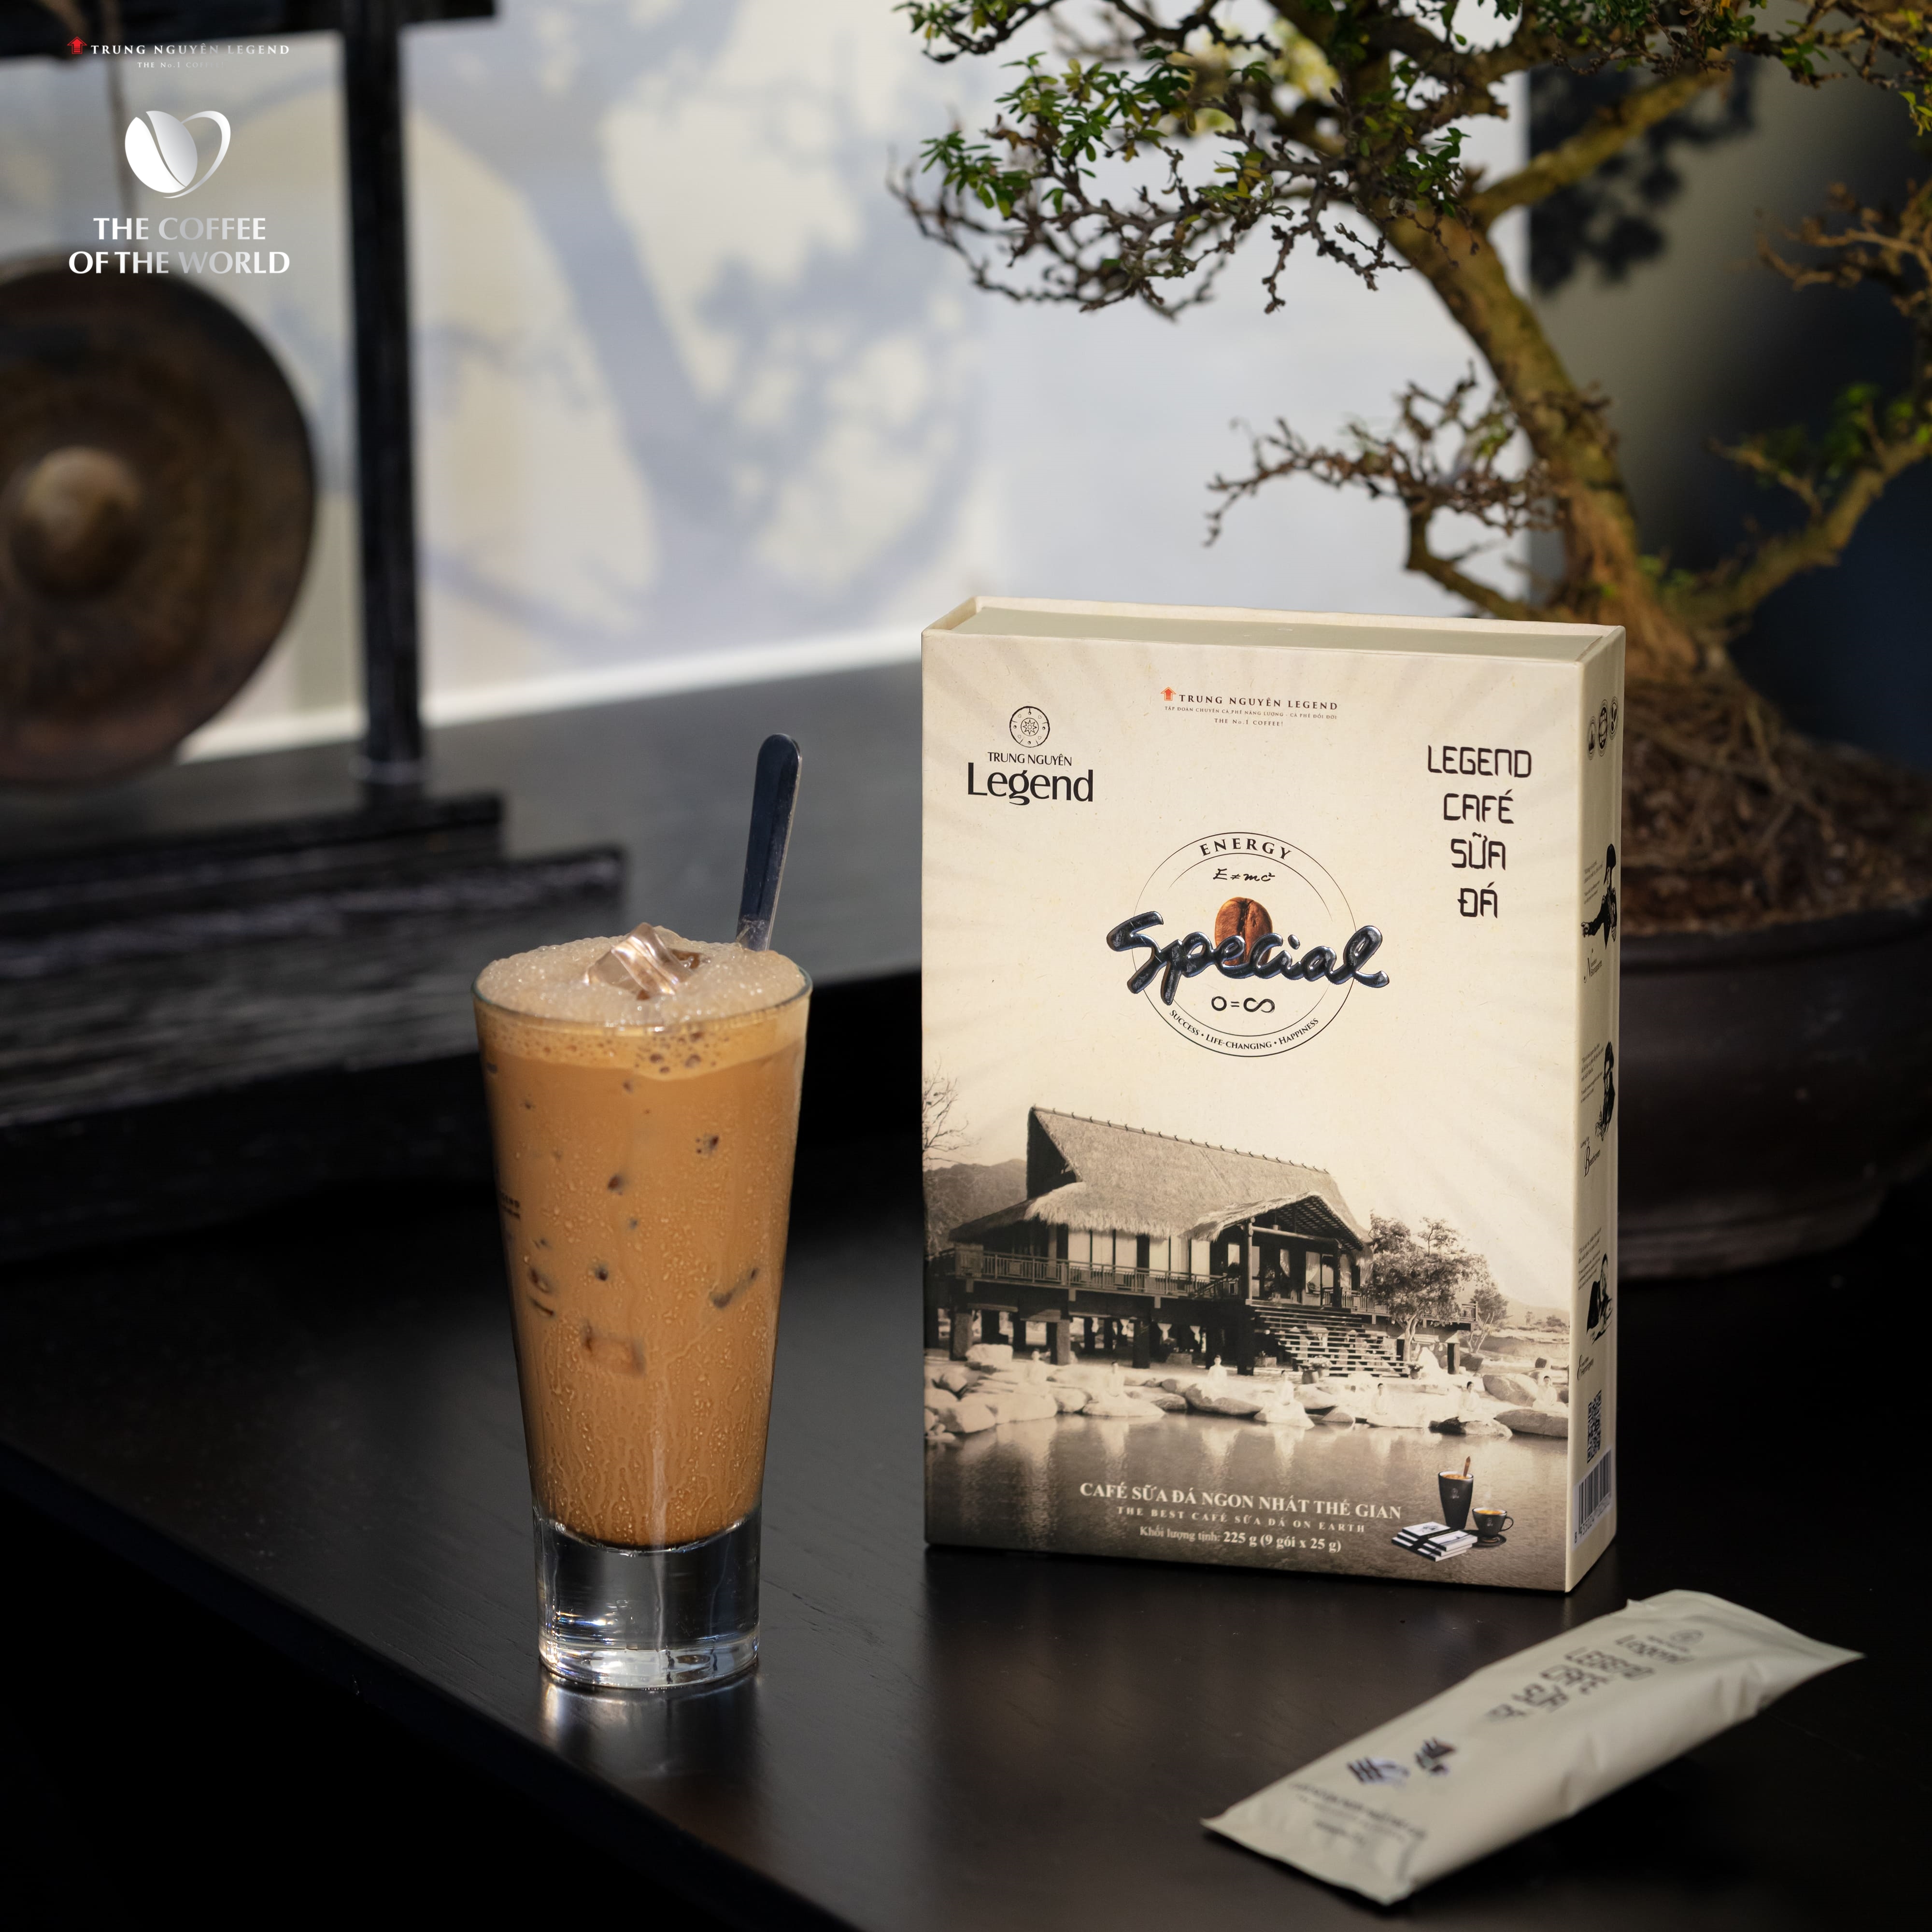 Hình ảnh Trung Nguyên Legend - Cà phê hoà tan rang xay 3in1 Cafe sữa đá - Hộp 9 gói x 25gr